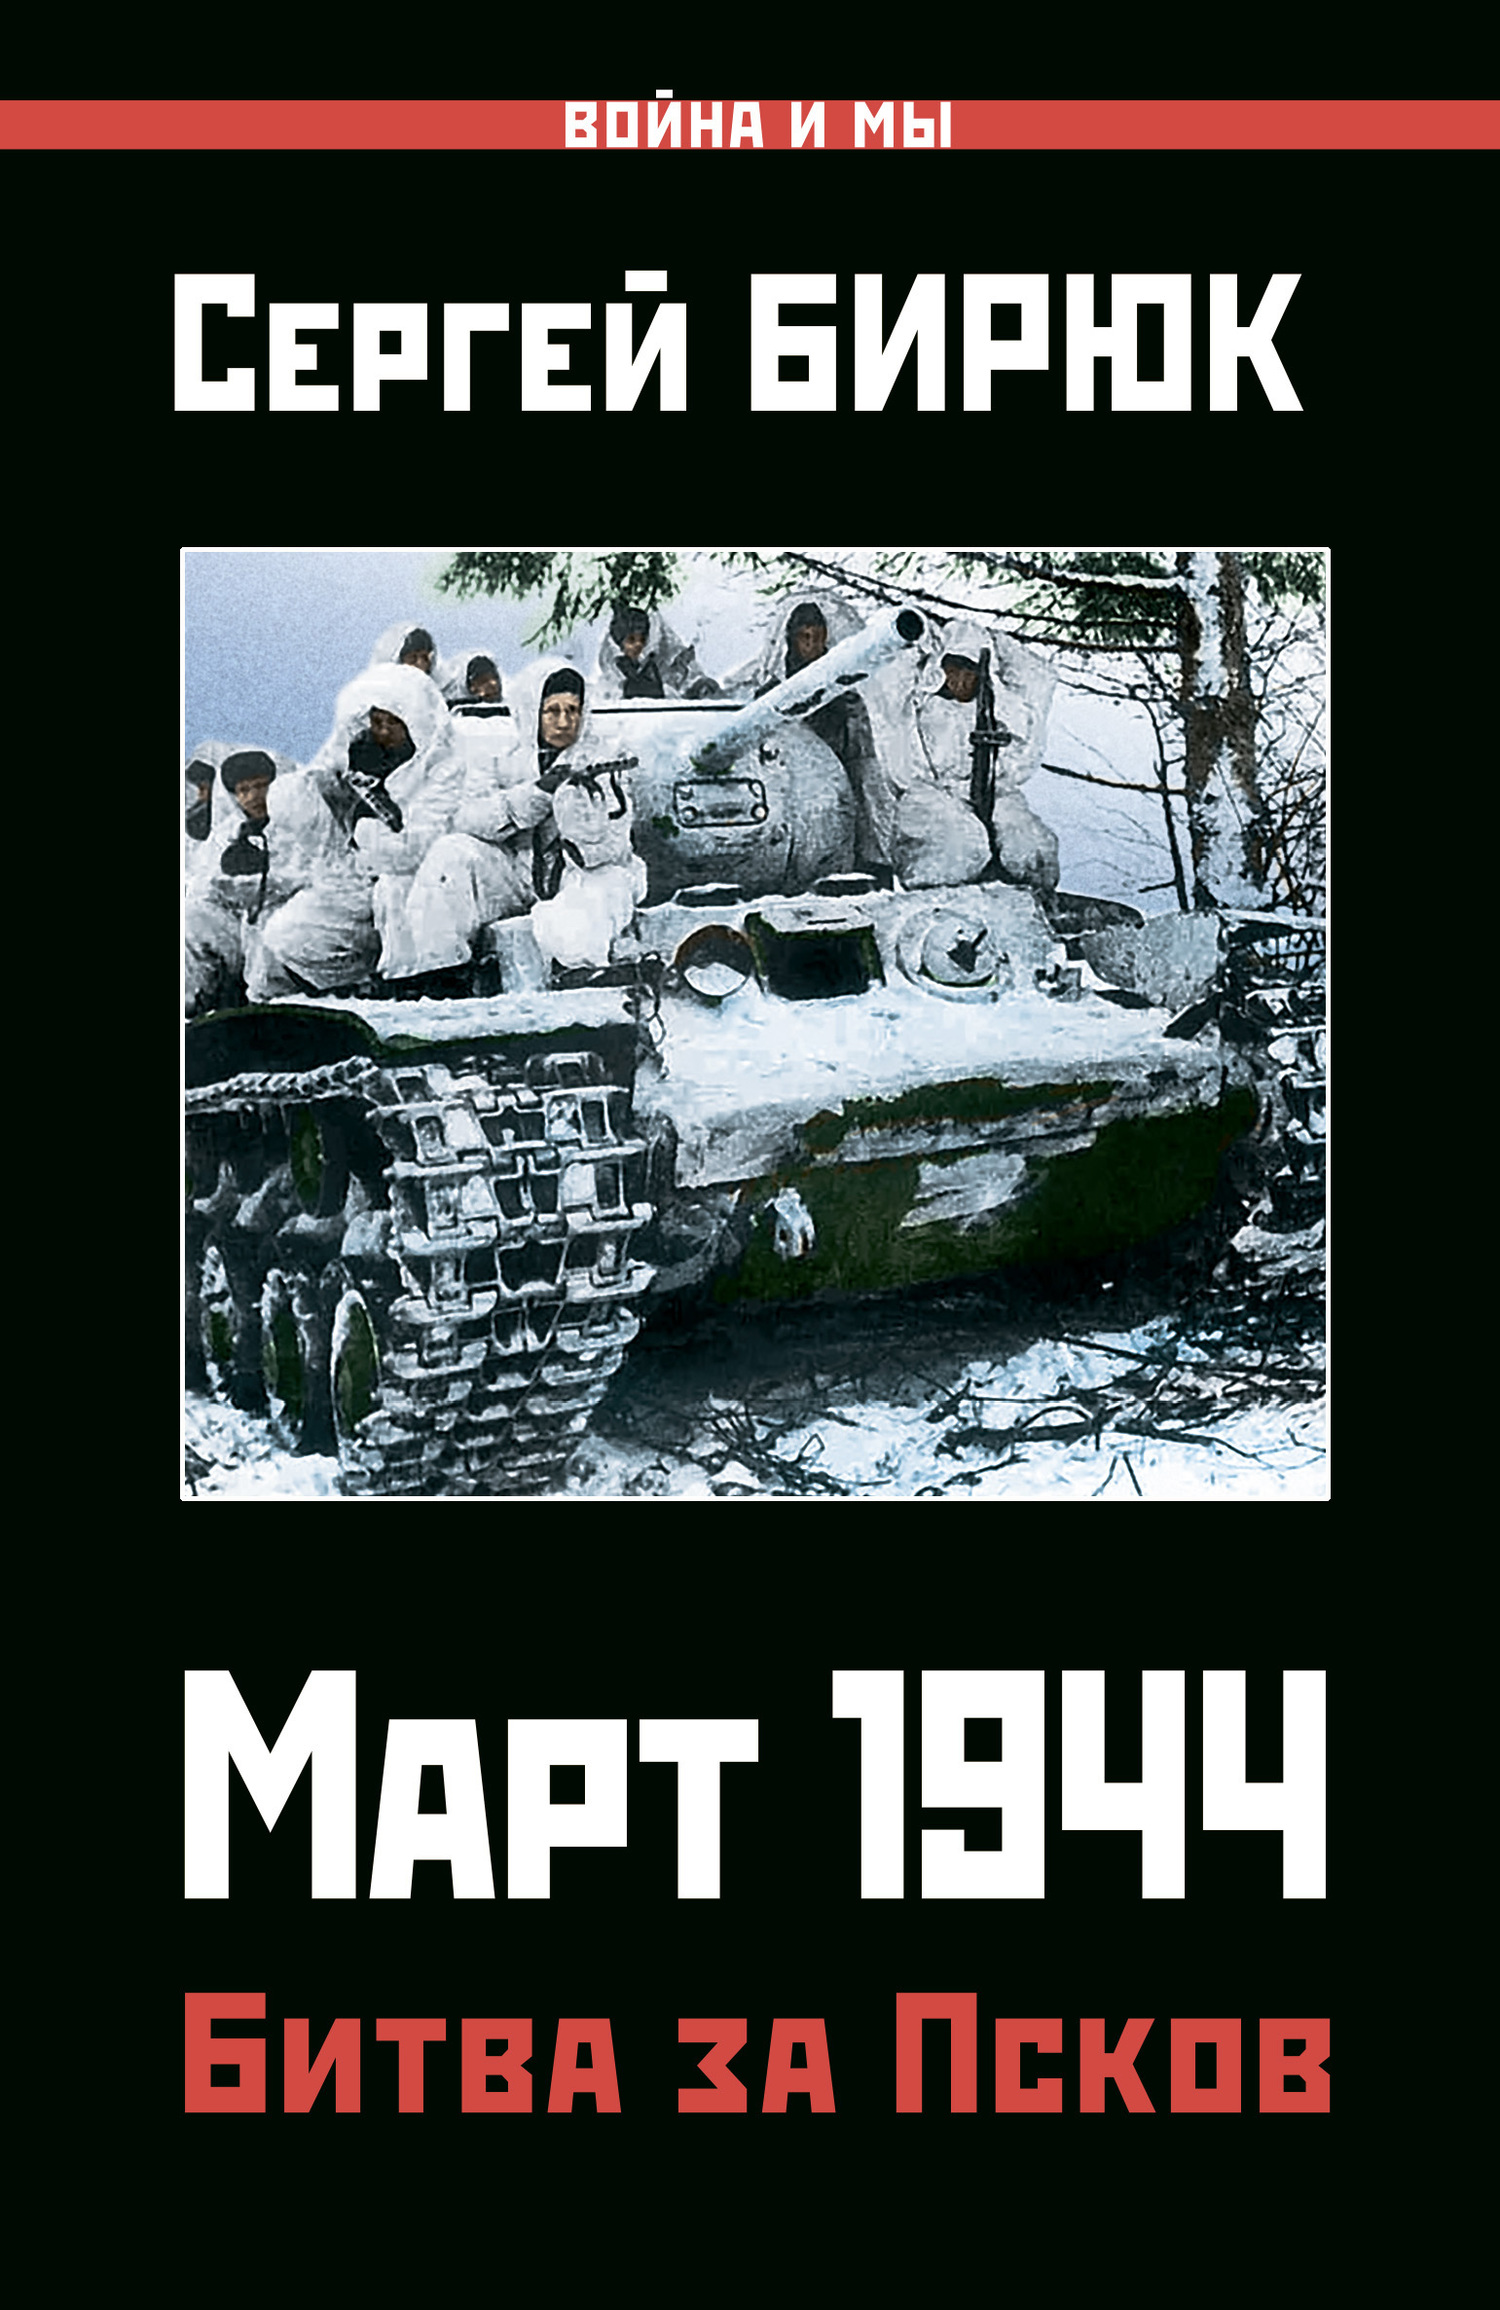 Бирюк Сергей - Март 1944. Битва за Псков скачать бесплатно